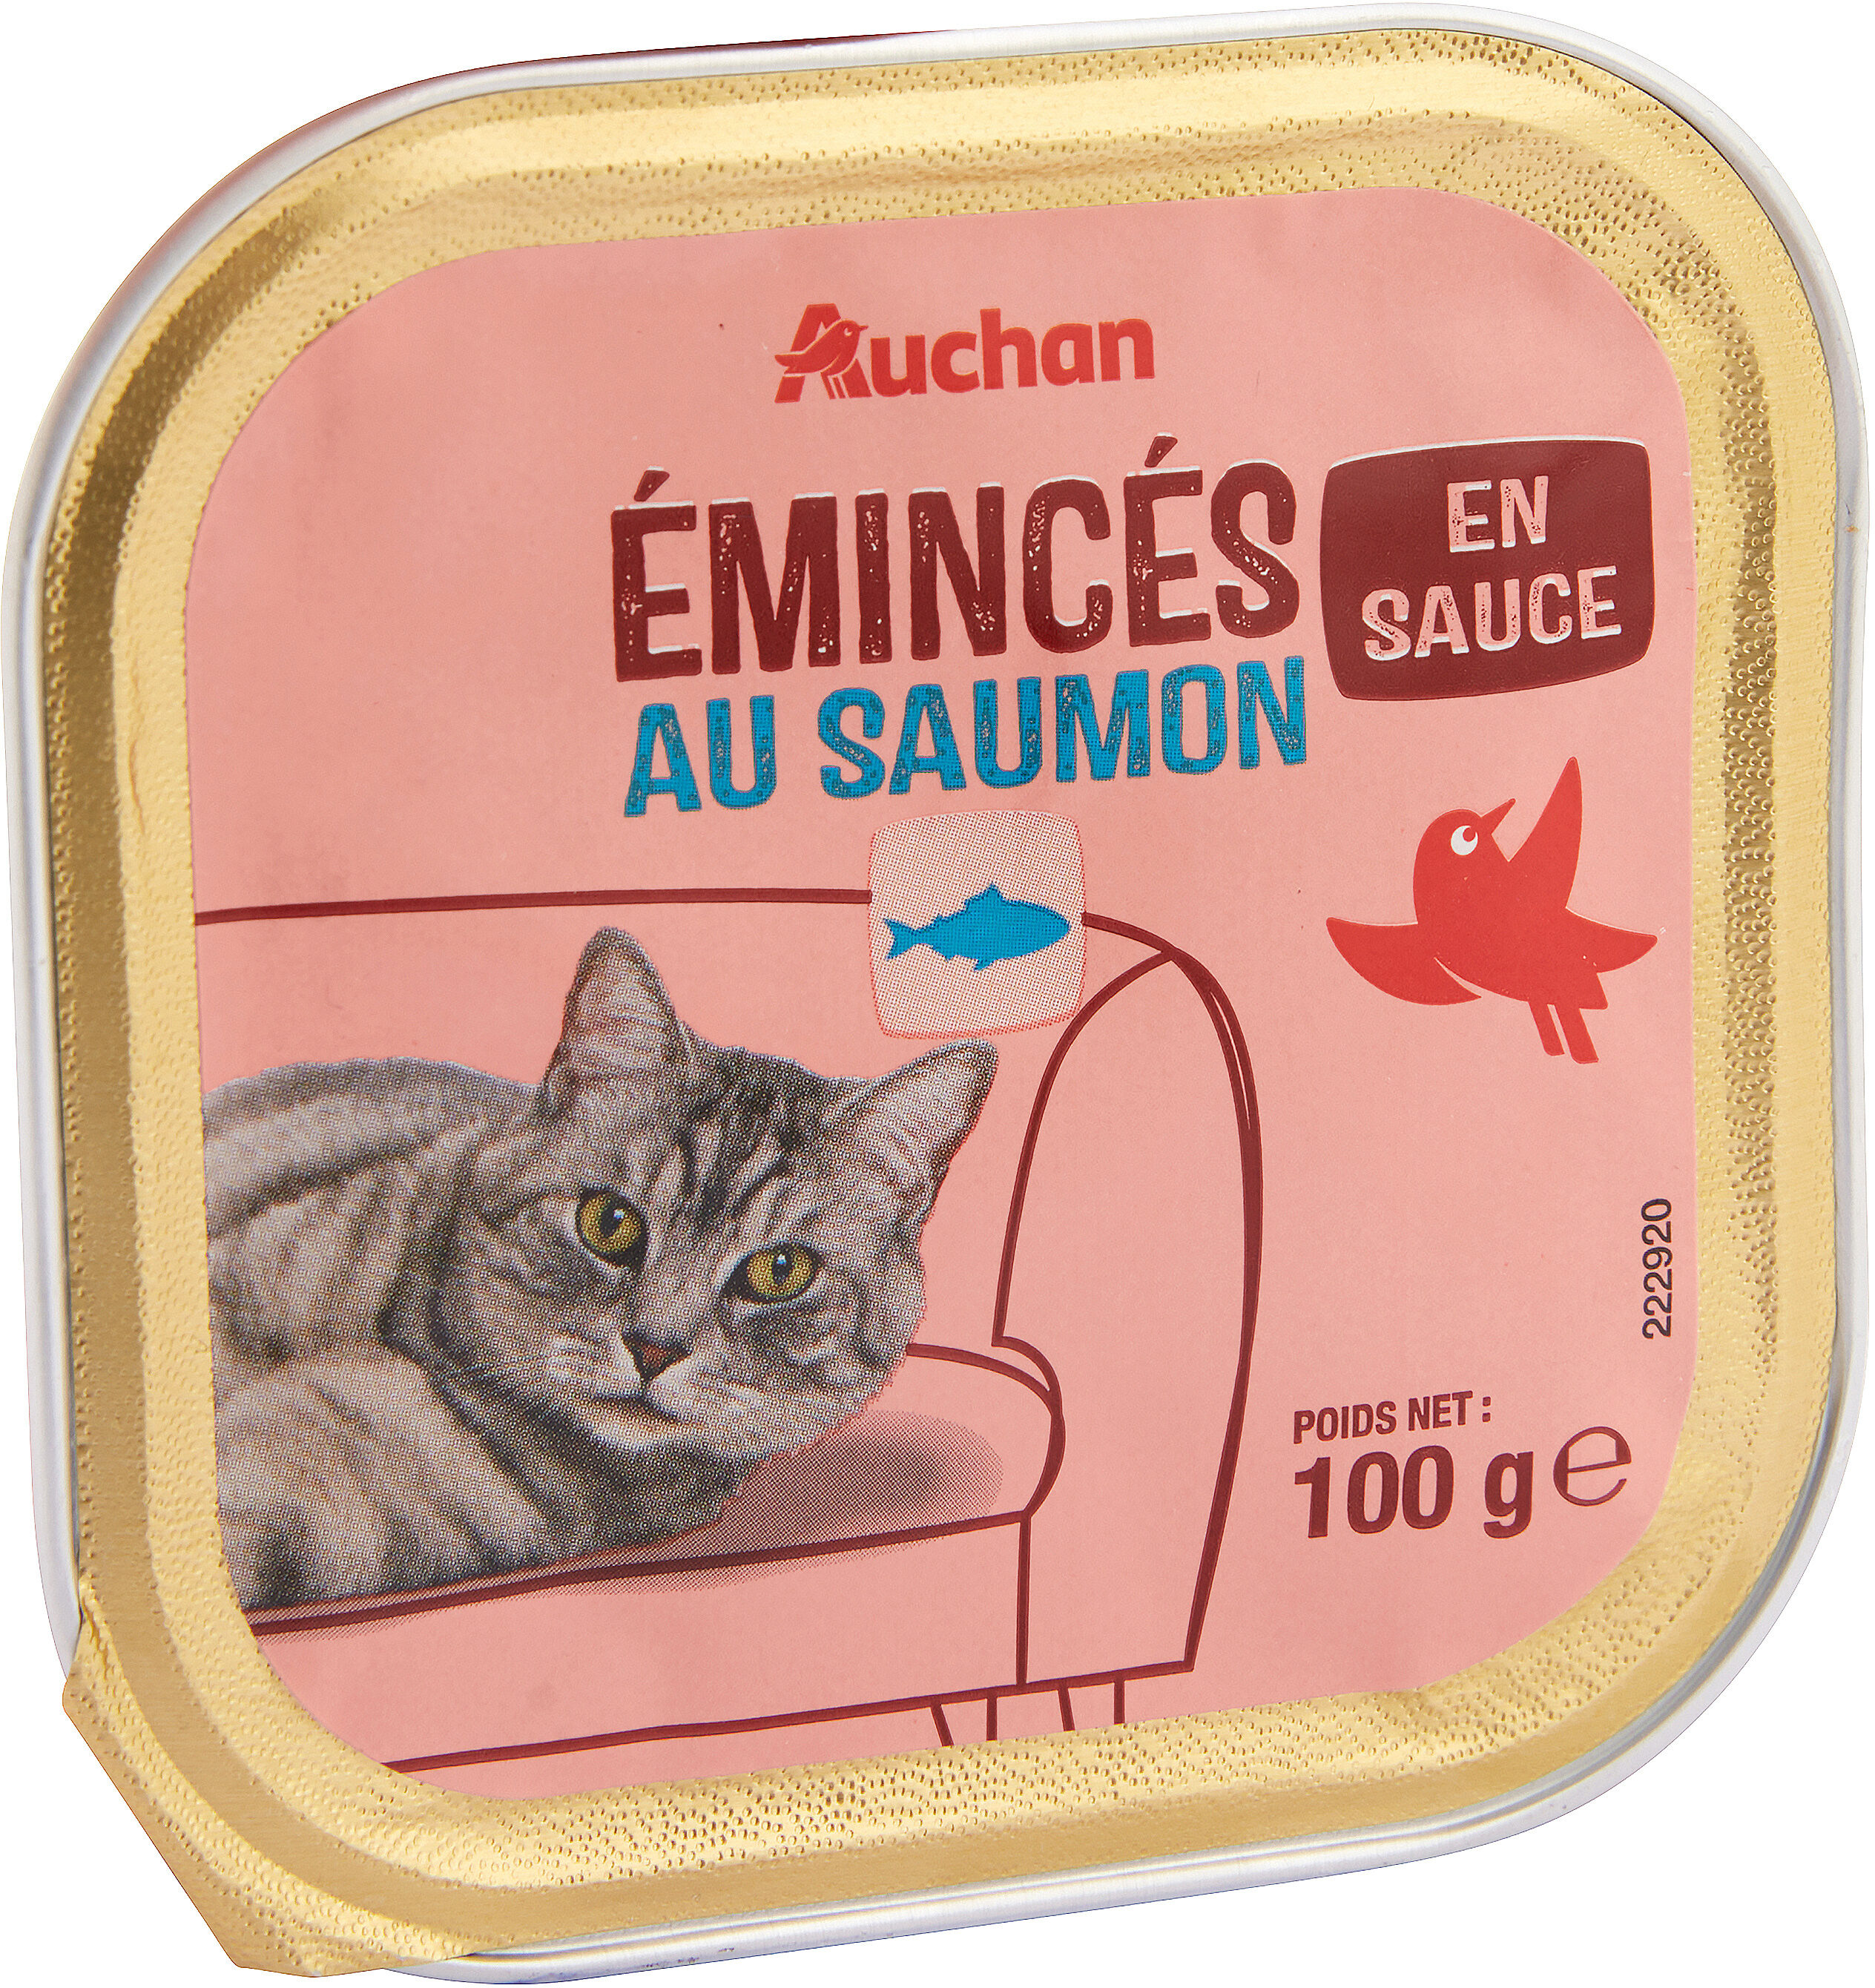 Émincés en sauce au saumon - Product - fr